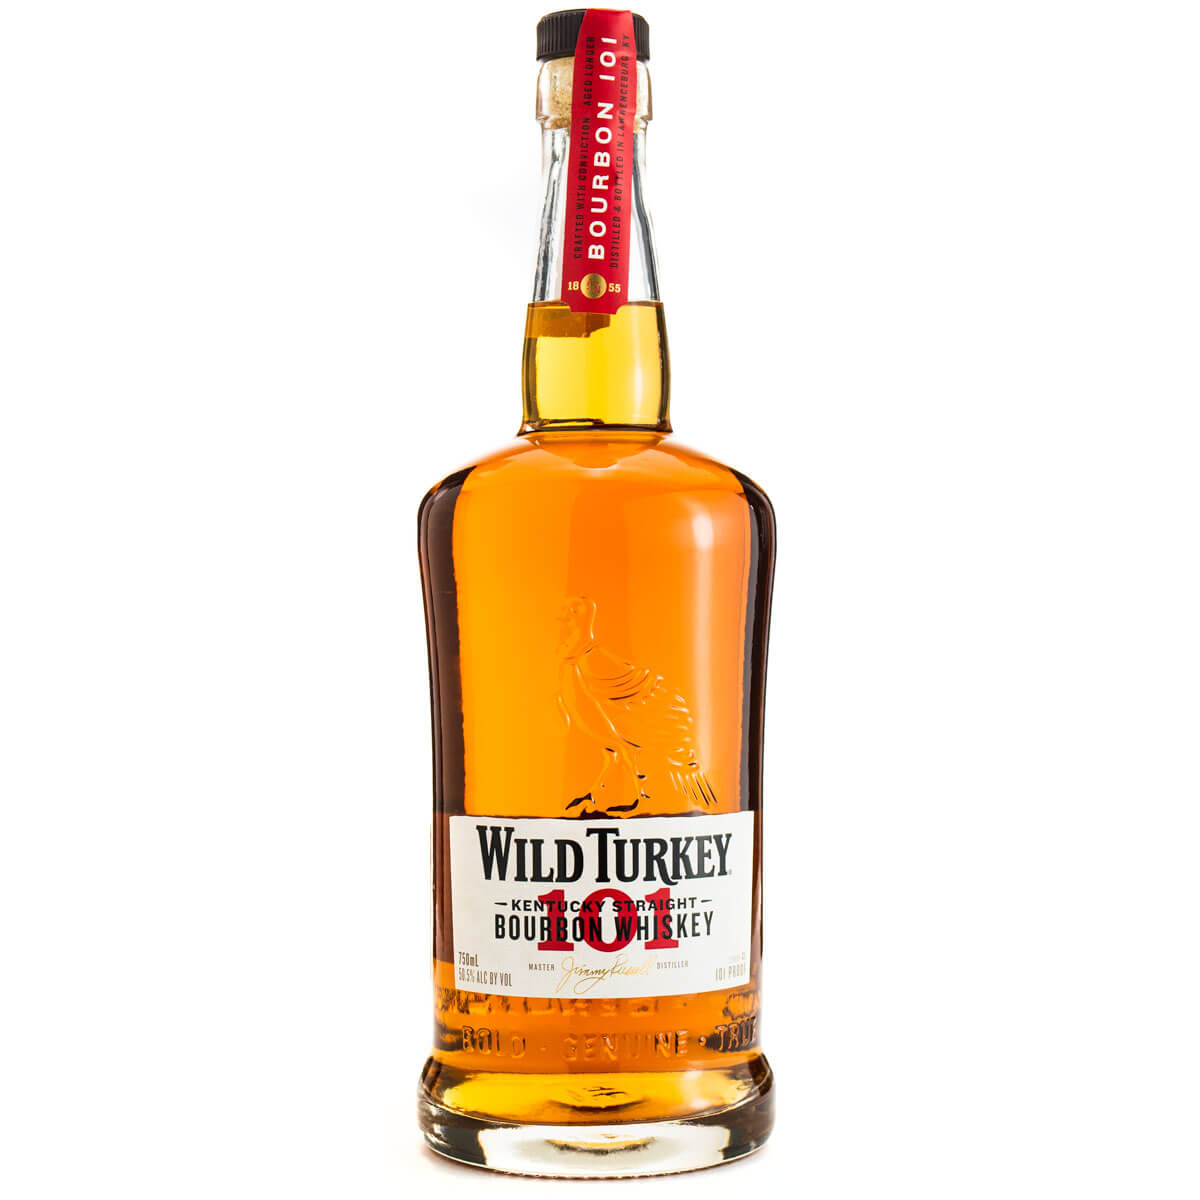 Wild Turkey 101 bottle